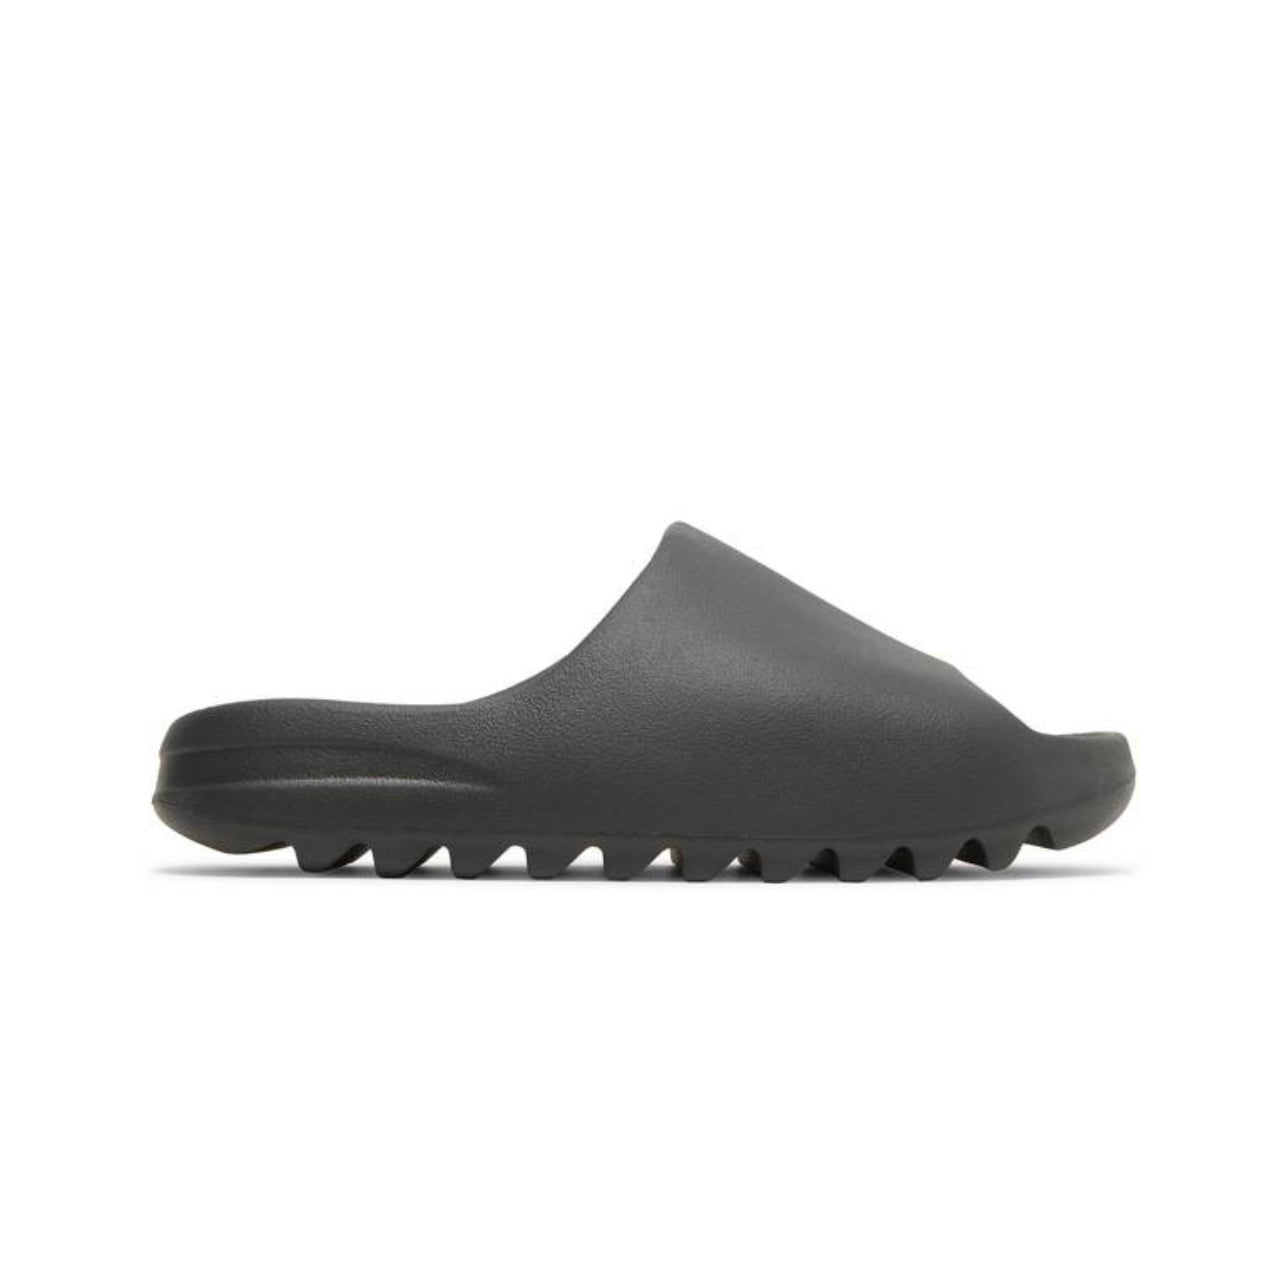 Adidas Yeezy Slide “Onyx”